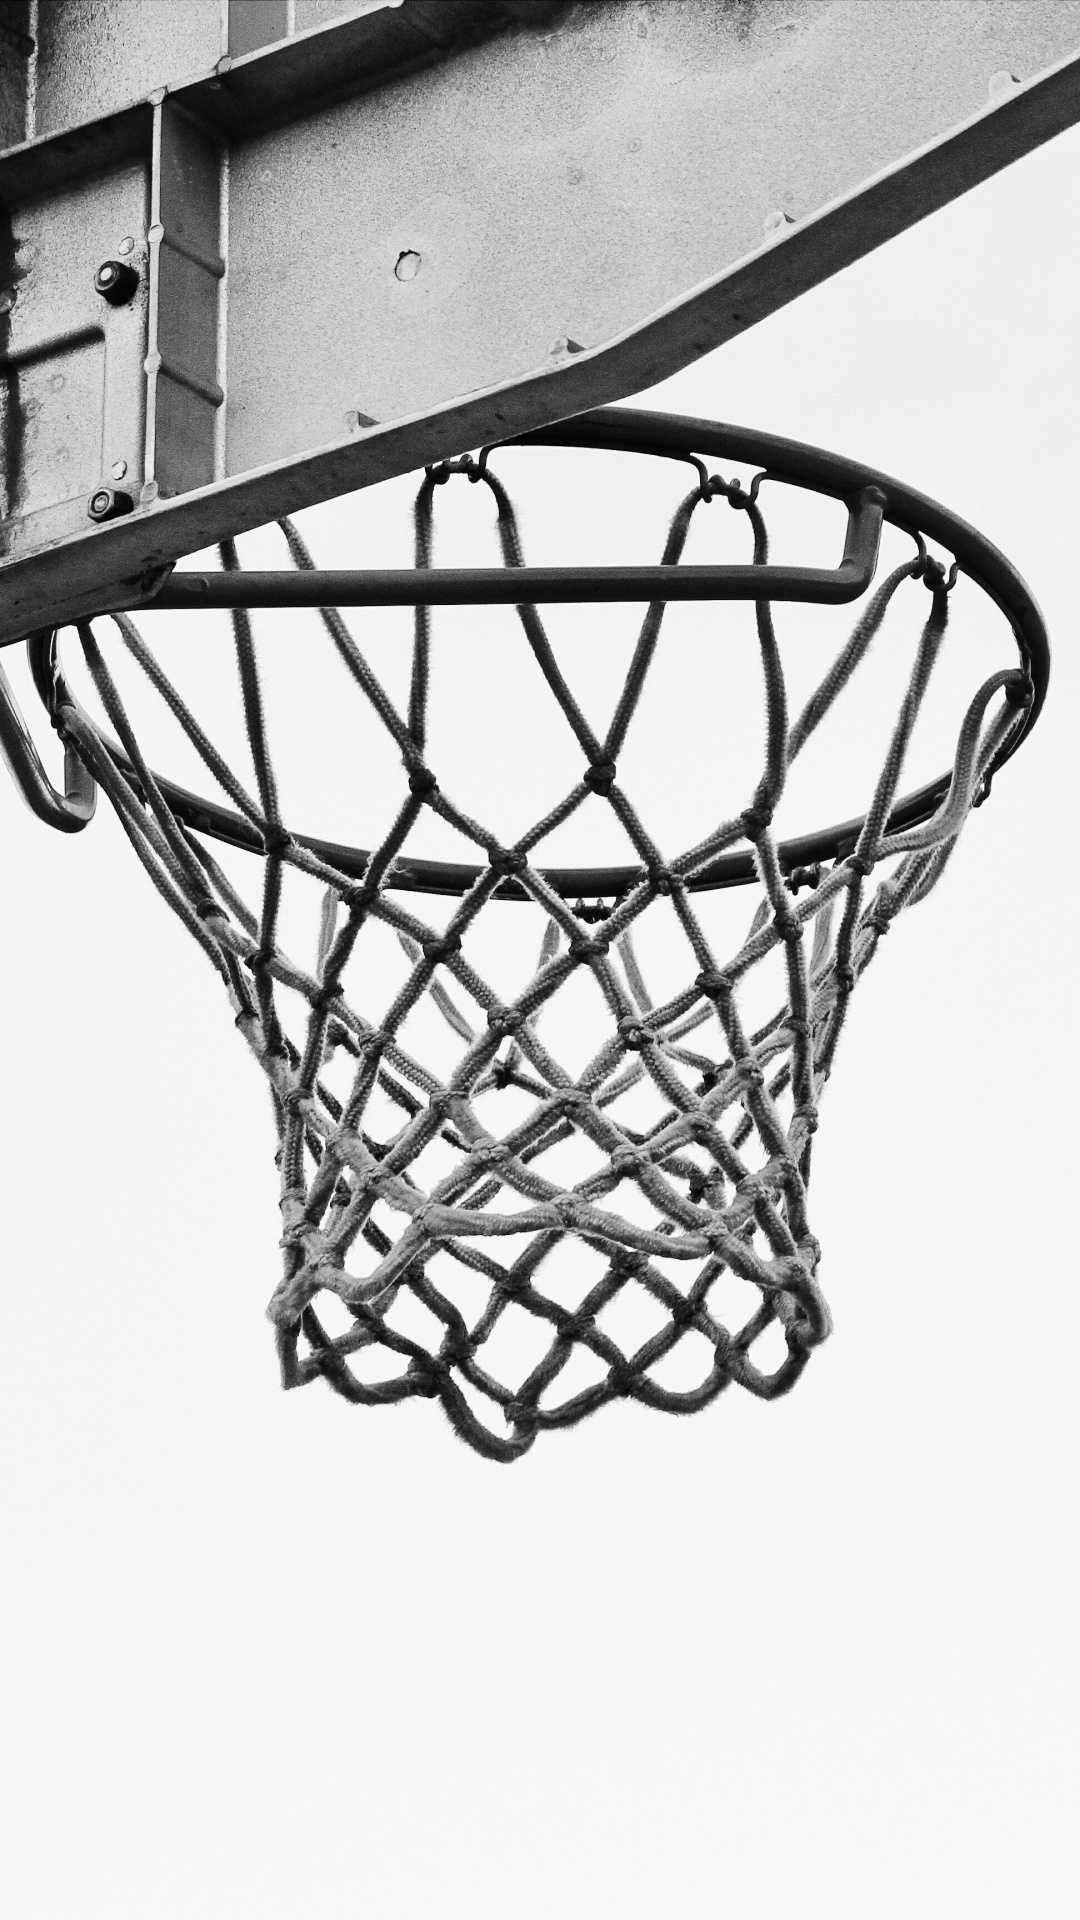 篮球, 篮板, 篮球场, 街头, 团队运动 壁纸 1080x1920 允许